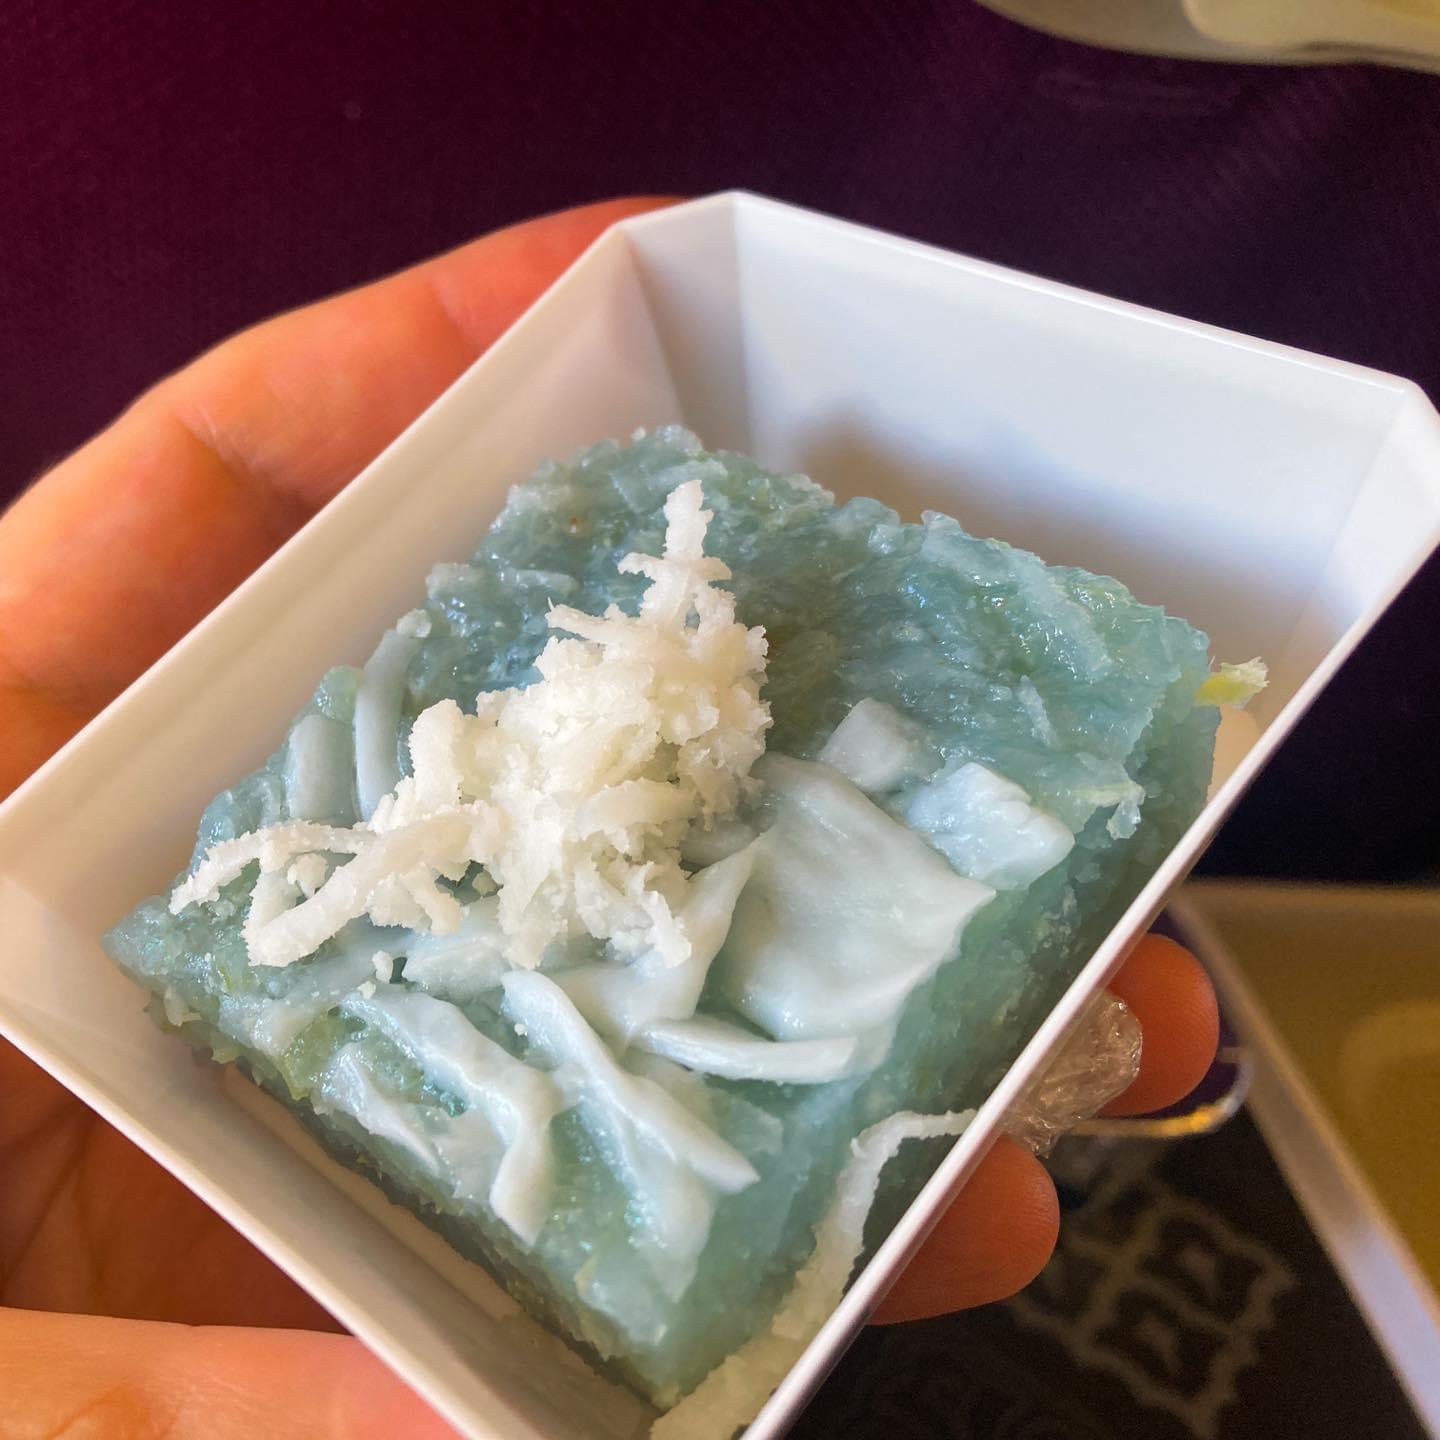 This light blue, gelatinous looking dessert from Thai Airways was ...